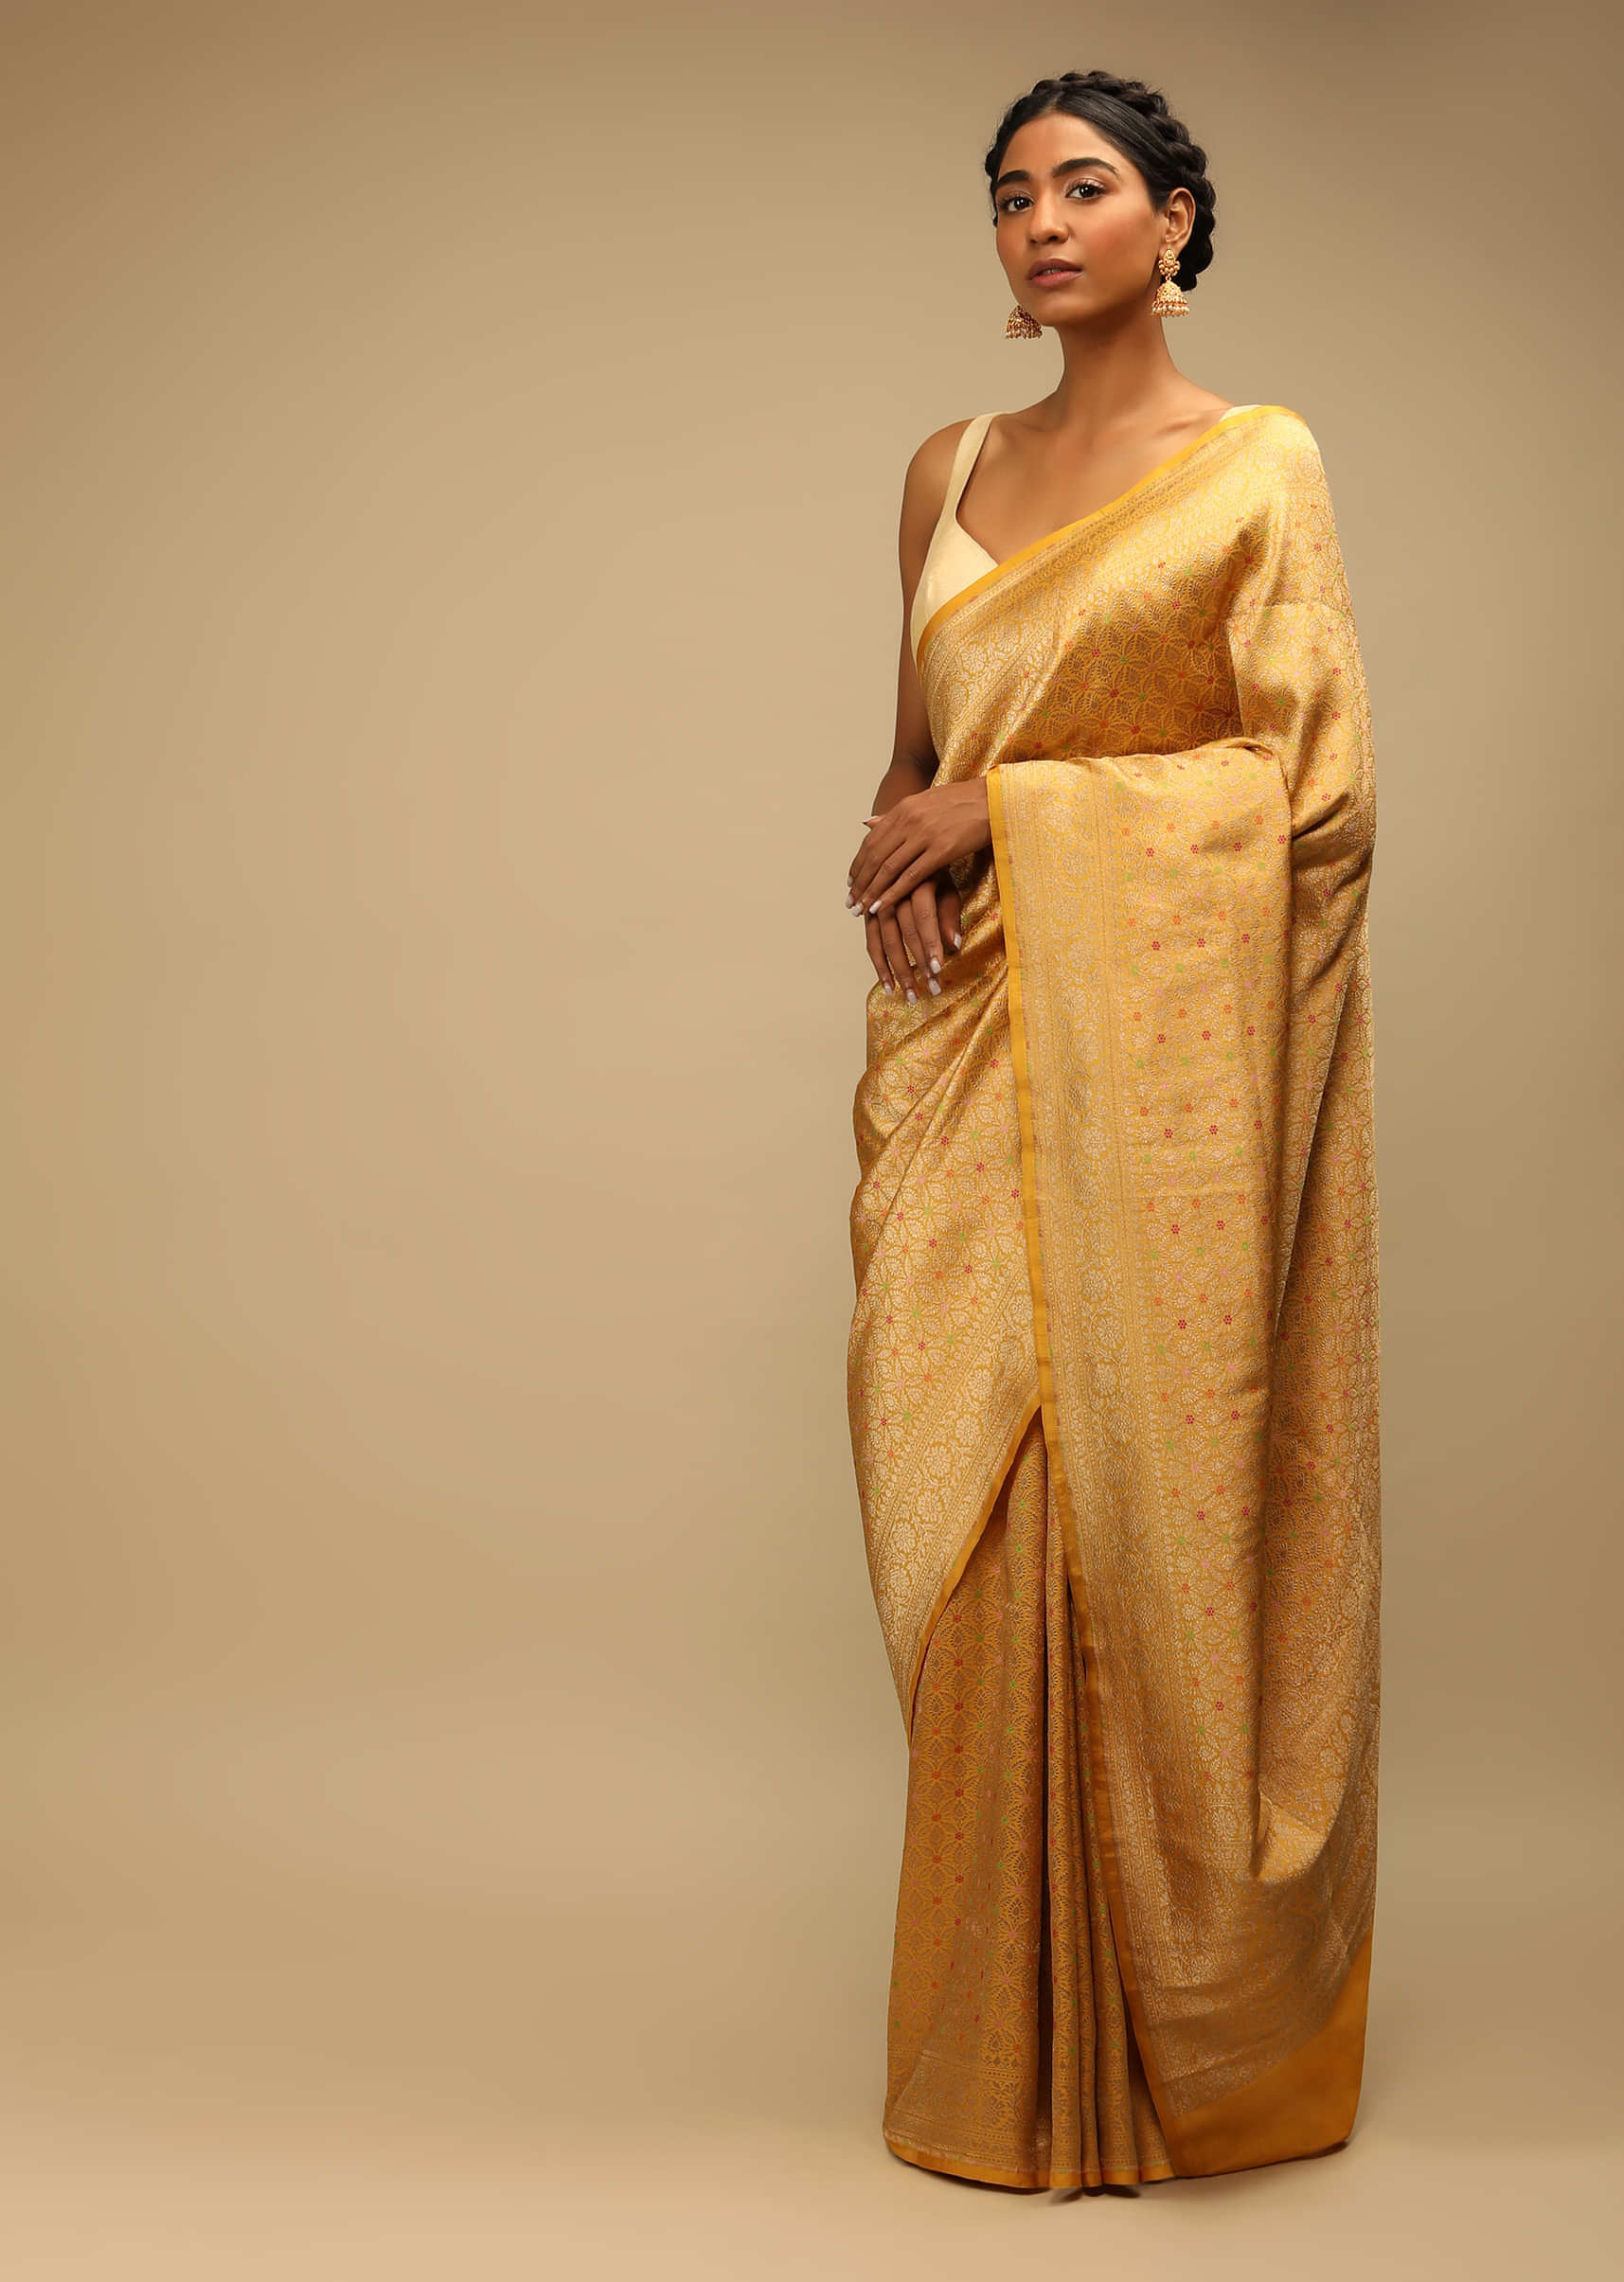 Designer Gold Color Cotton Silk Saree with Heavy Black Blouse – Glitter  Gleam